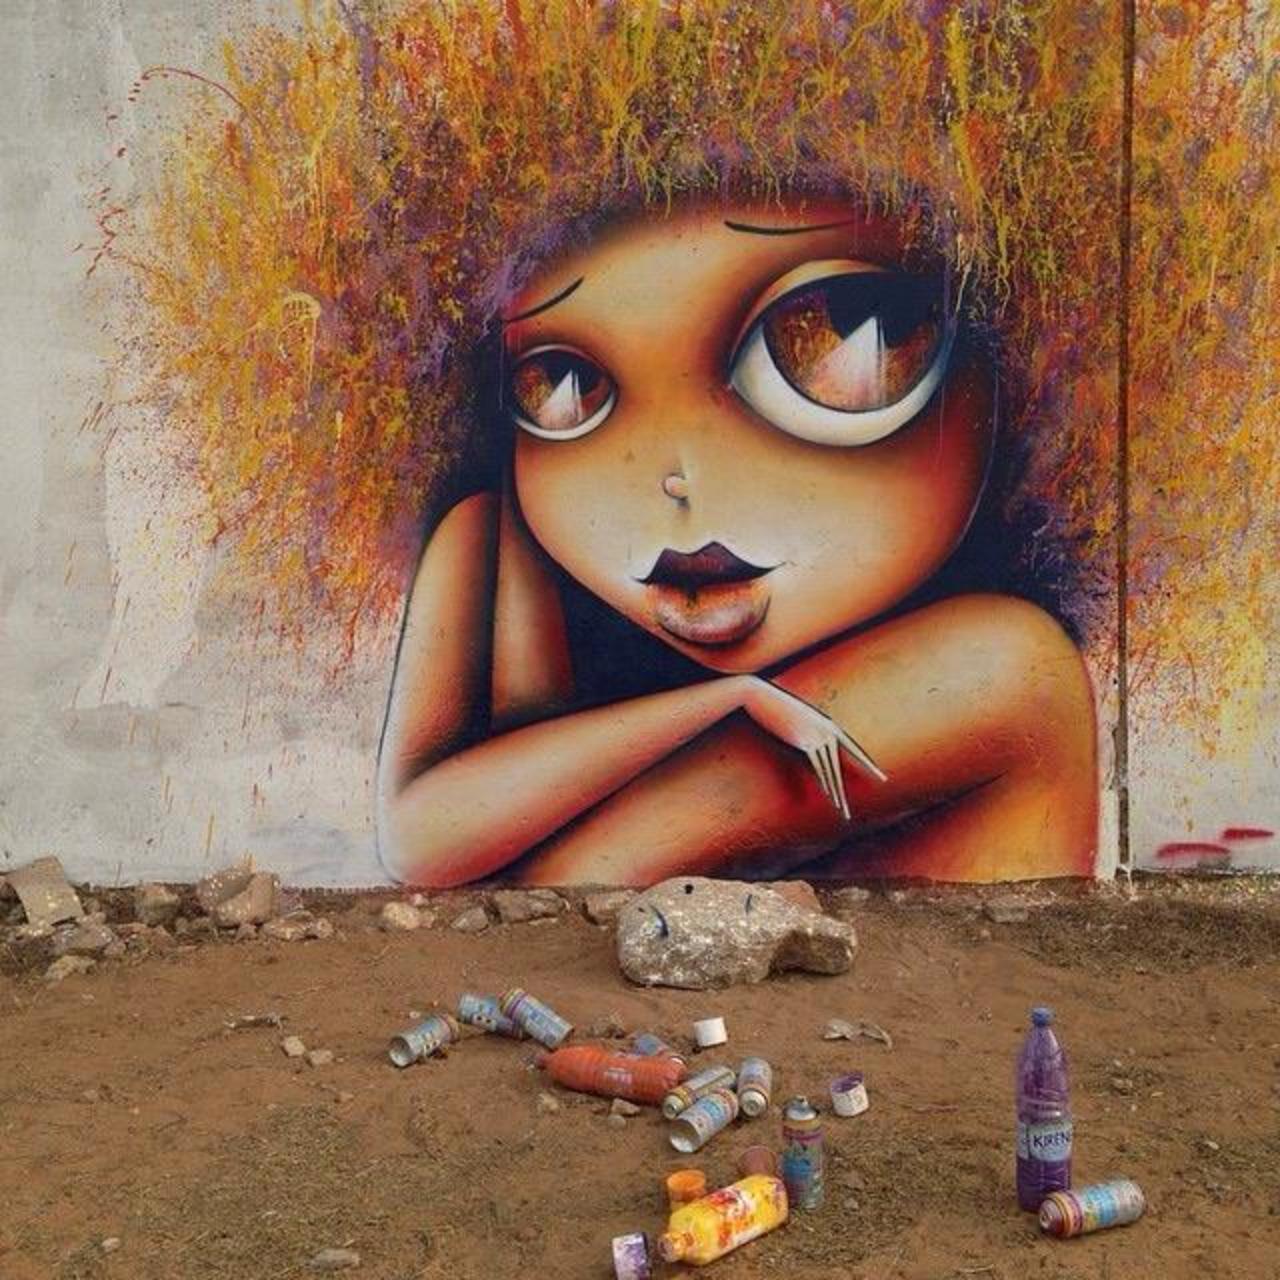 New Street Art by Vinie in Dakar, Senegal  

#art #arte #graffiti #streetart http://t.co/bvA170awpw